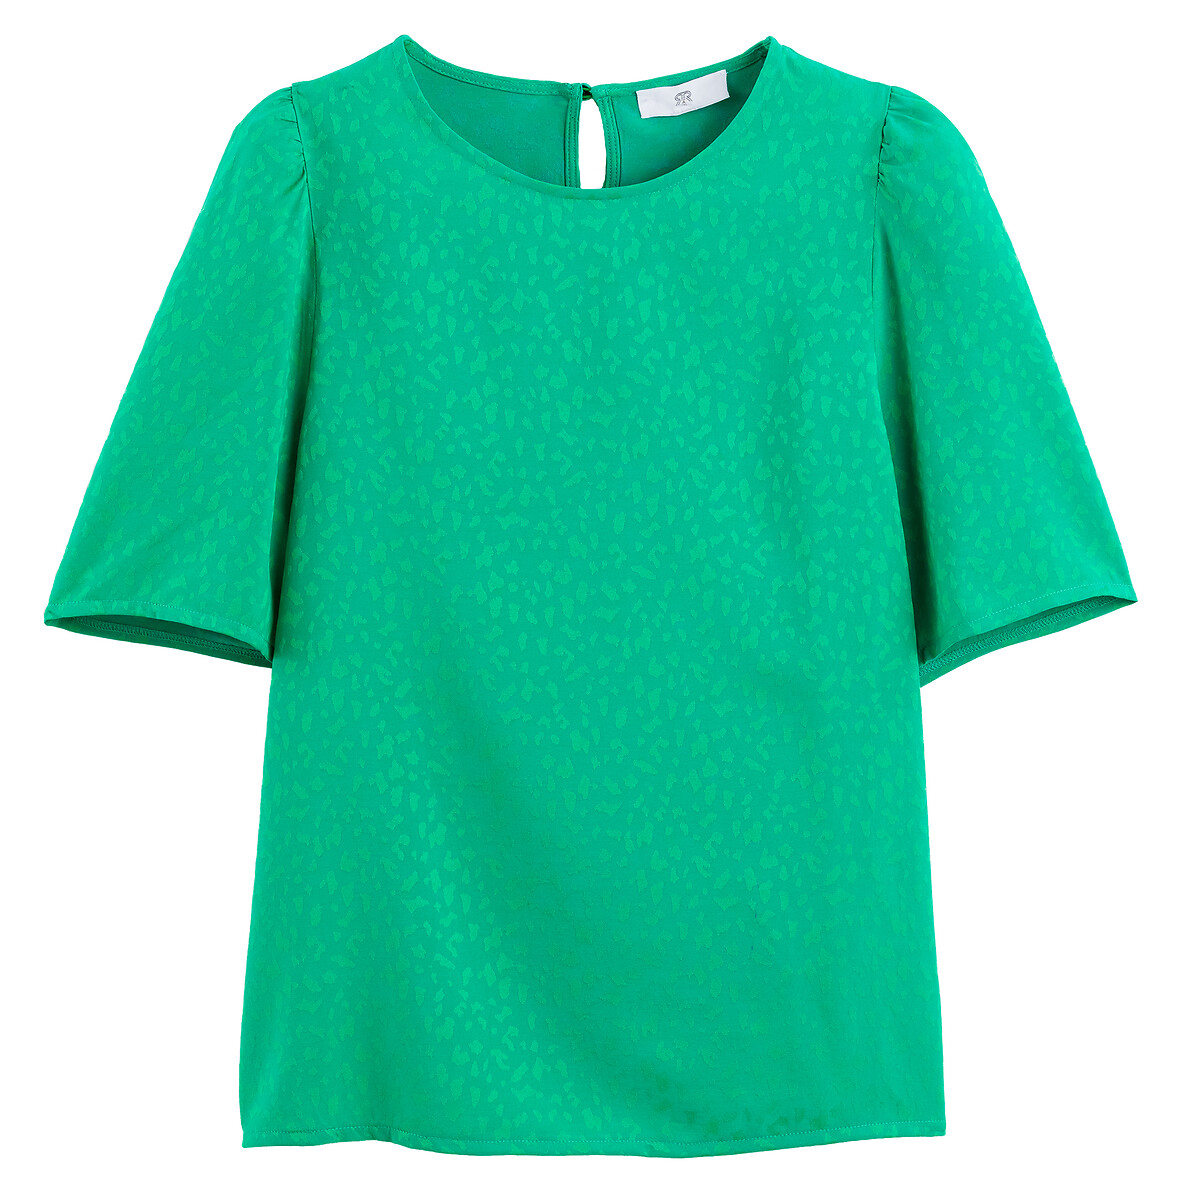 Блузка С круглым вырезом и жаккардовым принтом короткие рукава 44 (FR) - 50 (RUS) зеленый LaRedoute, размер 44 (FR) - 50 (RUS) Блузка С круглым вырезом и жаккардовым принтом короткие рукава 44 (FR) - 50 (RUS) зеленый - фото 5